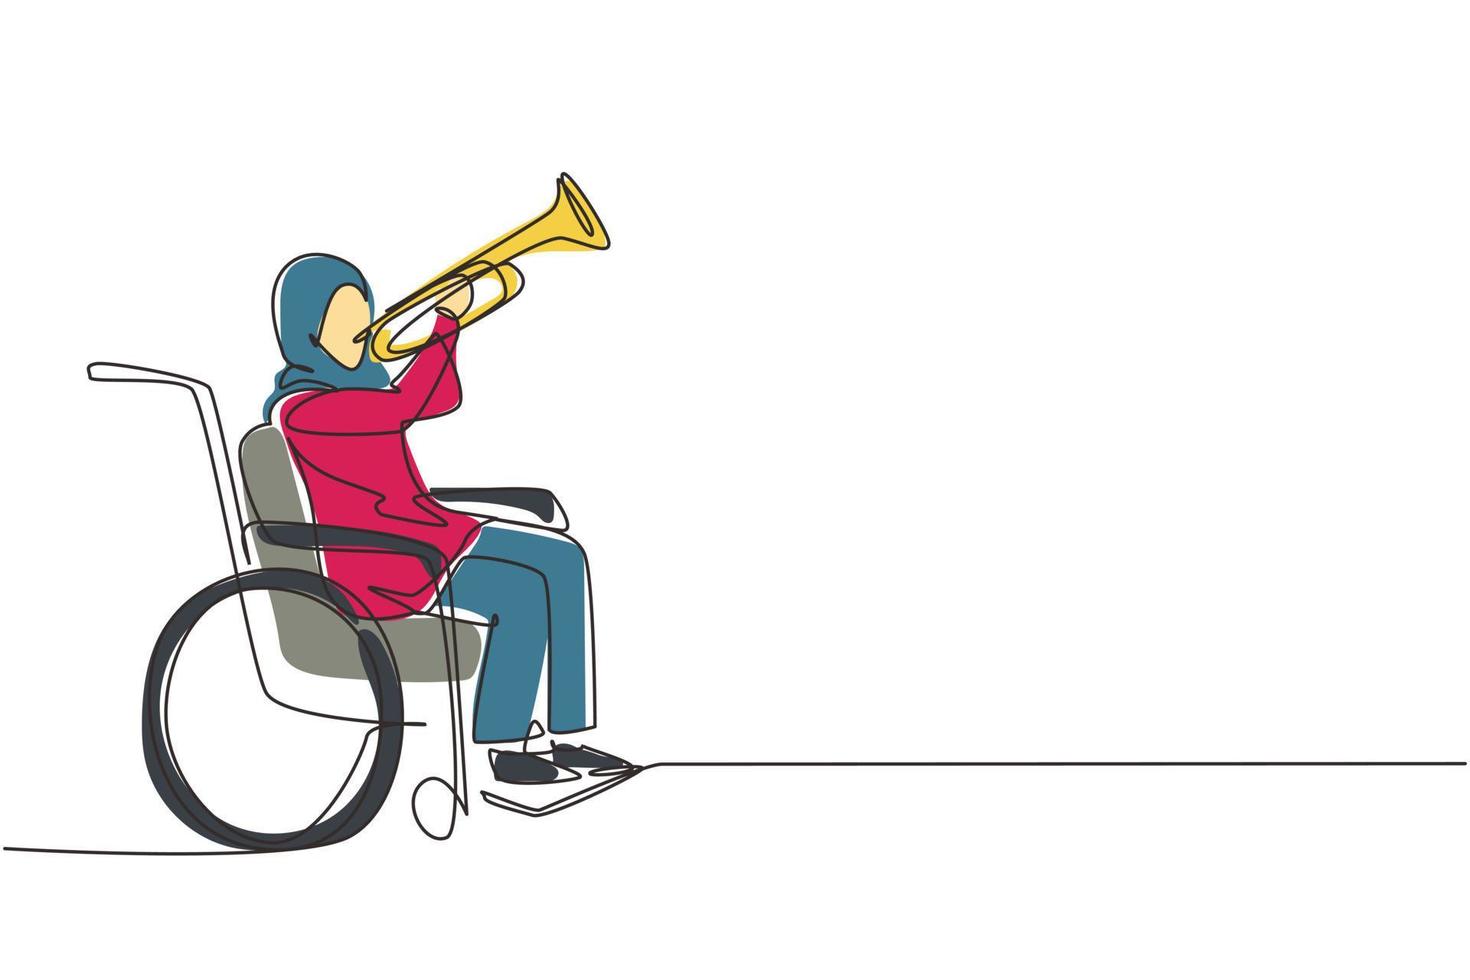 enkele doorlopende lijntekening Arabische vrouw in rolstoel die trompet speelt tijdens muziekles. fysiek niet in staat. persoon in het ziekenhuis. patiënt in het revalidatiecentrum. één lijn tekenen ontwerp vector